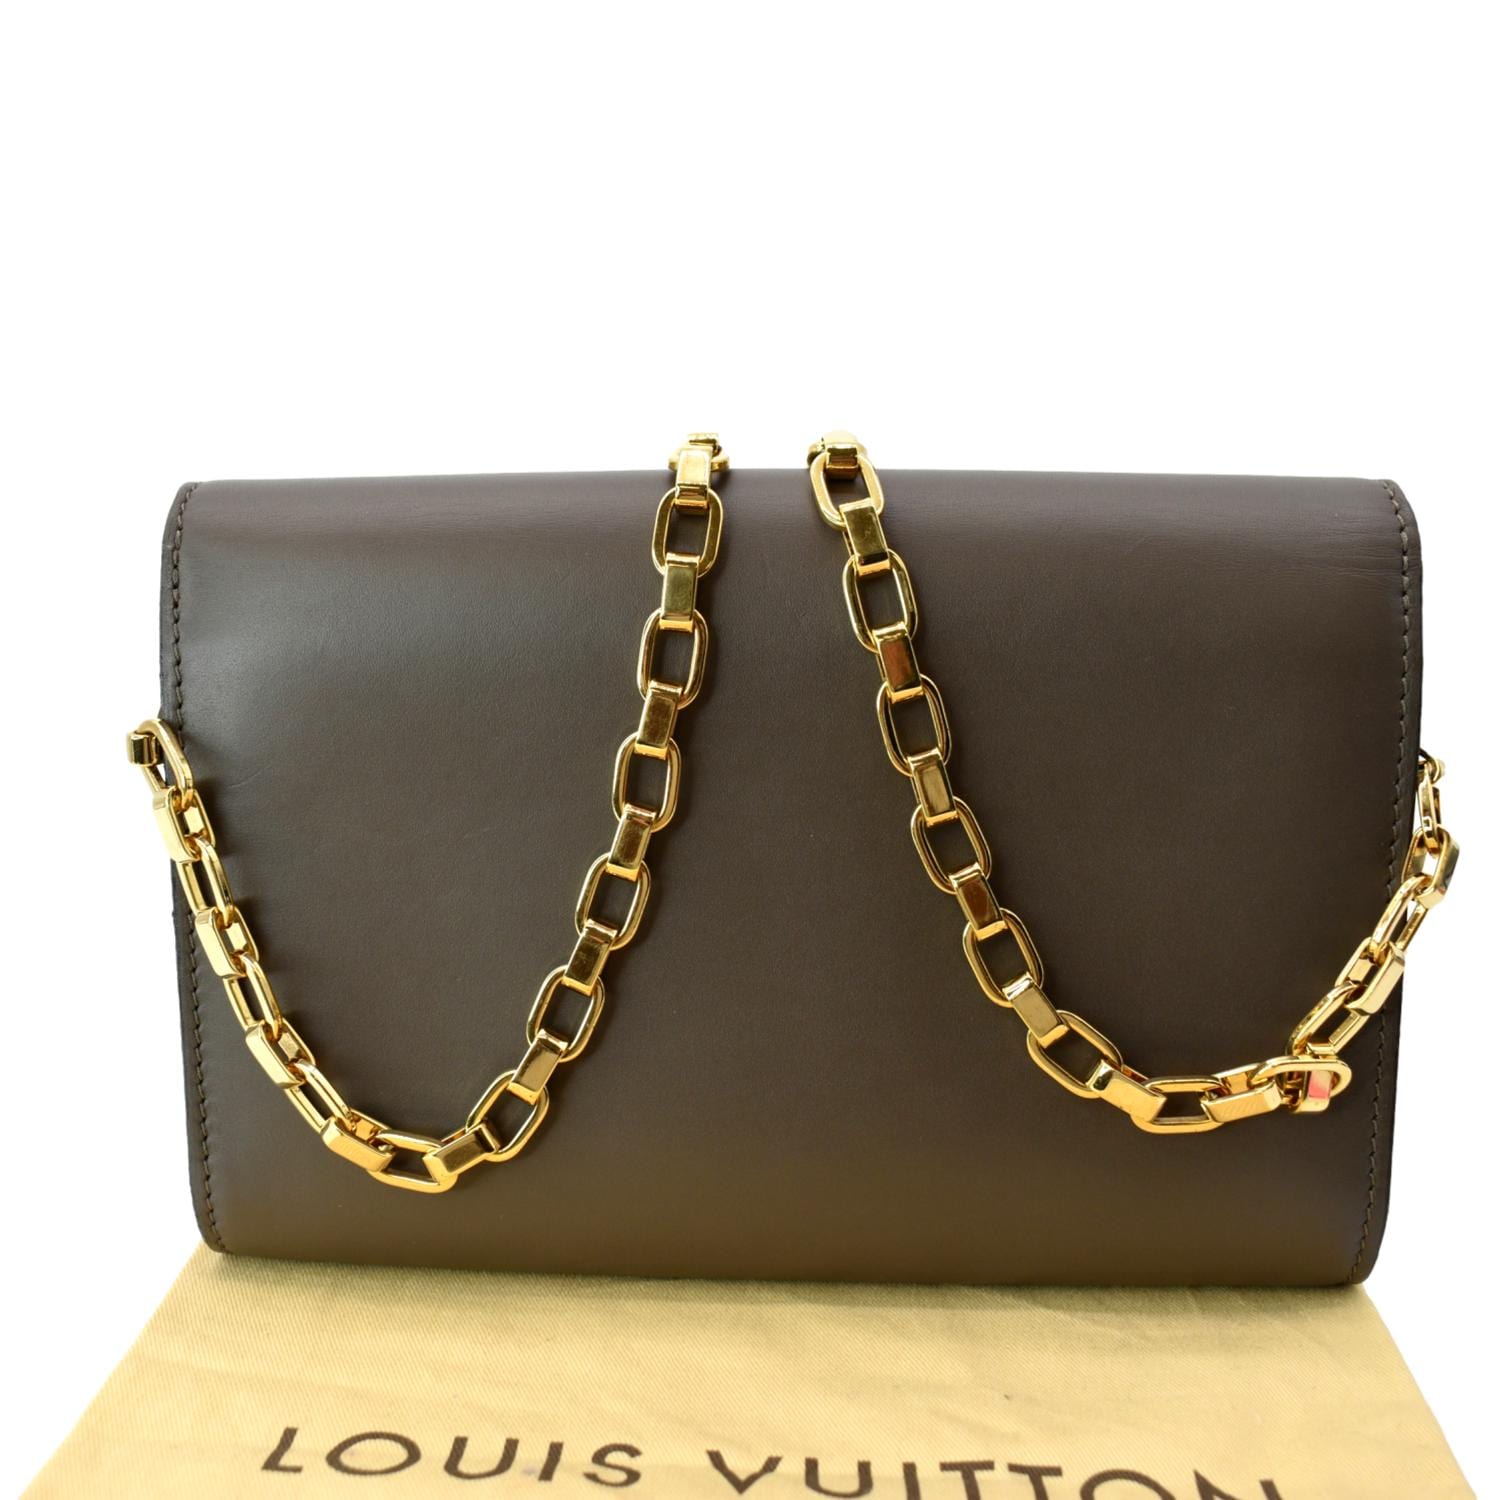 Louis Vuitton Louise scarf ring